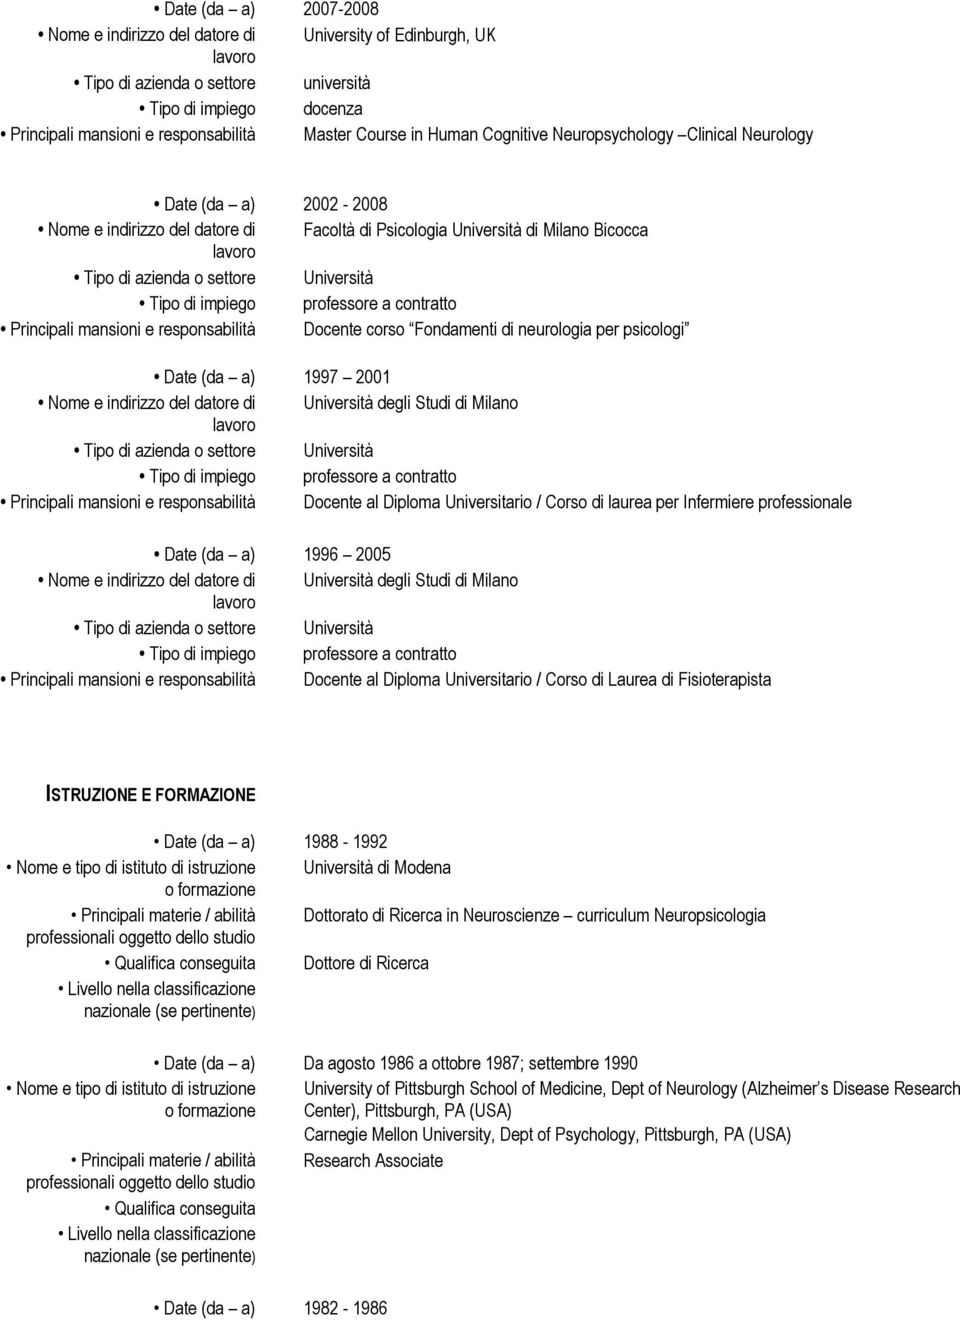 2001 Nome e indirizzo del datore di Università degli Studi di Milano Principali mansioni e responsabilità Docente al Diploma Universitario / Corso di laurea per Infermiere professionale Date (da a)